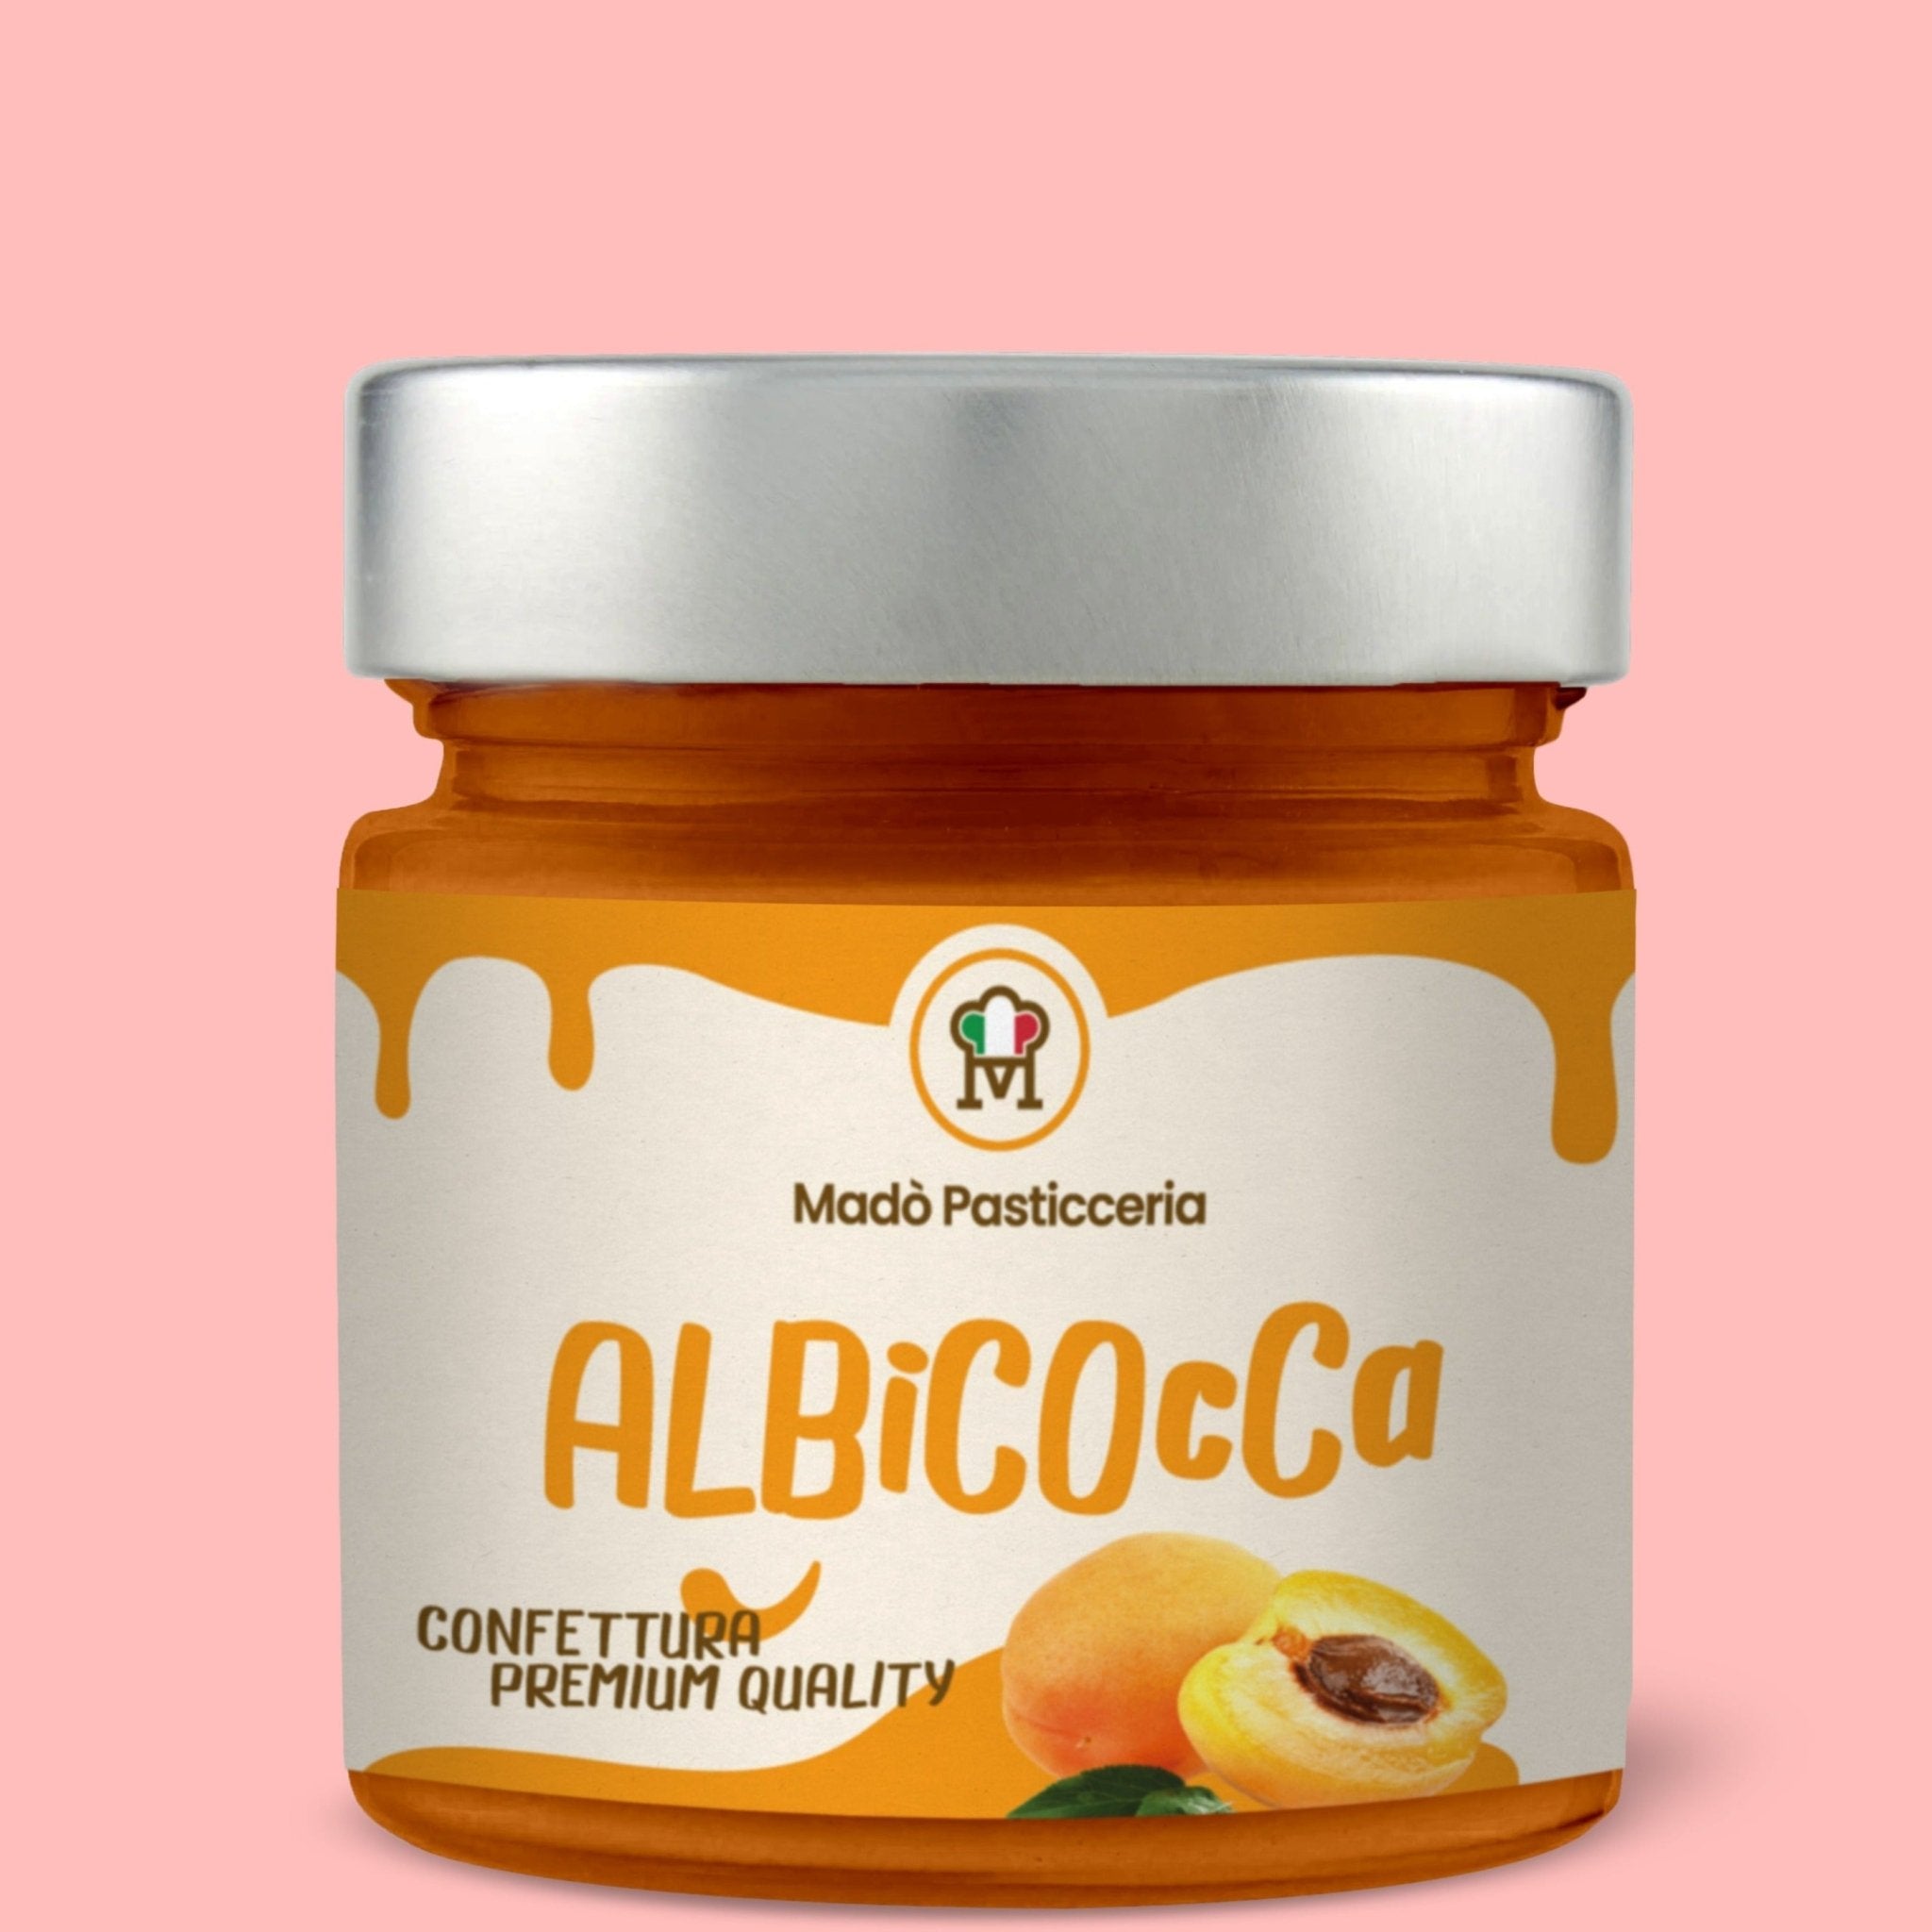 Confettura premium quality "Albicocca" - Madò Pasticceria